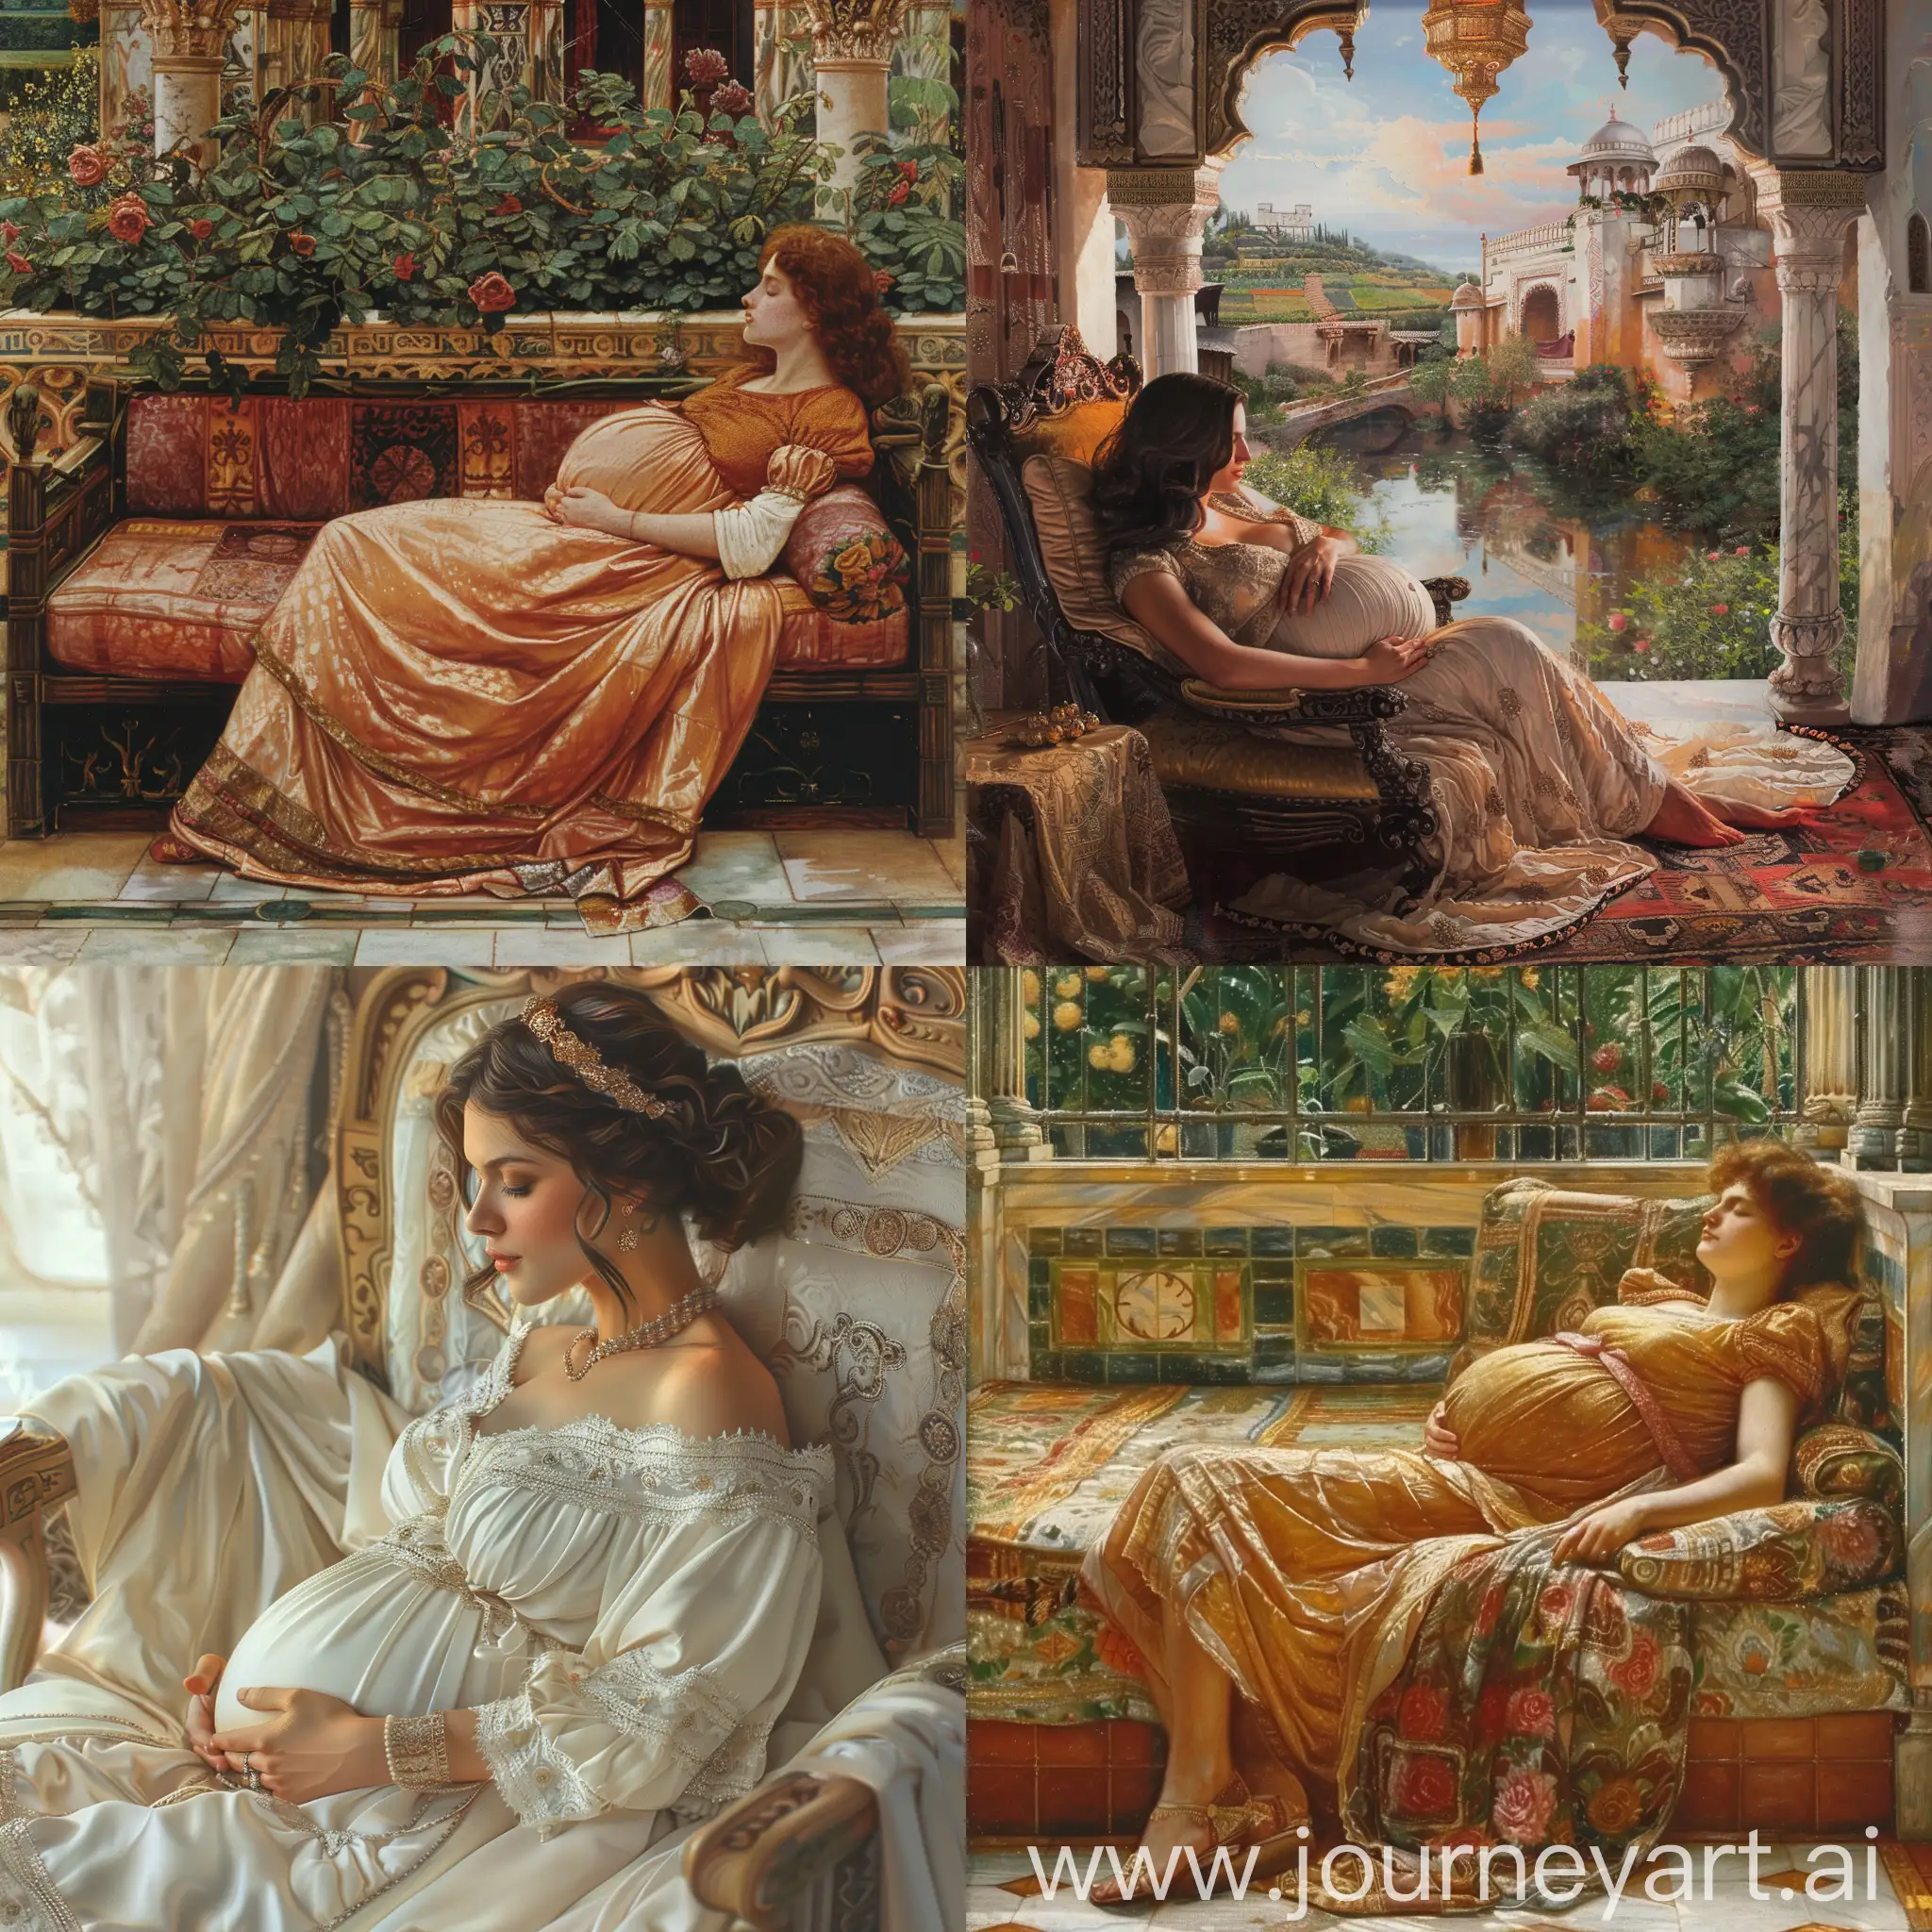 画世界上最尊贵奢侈的女人怀孕休息的场景。  细节丰富   全景图  高清